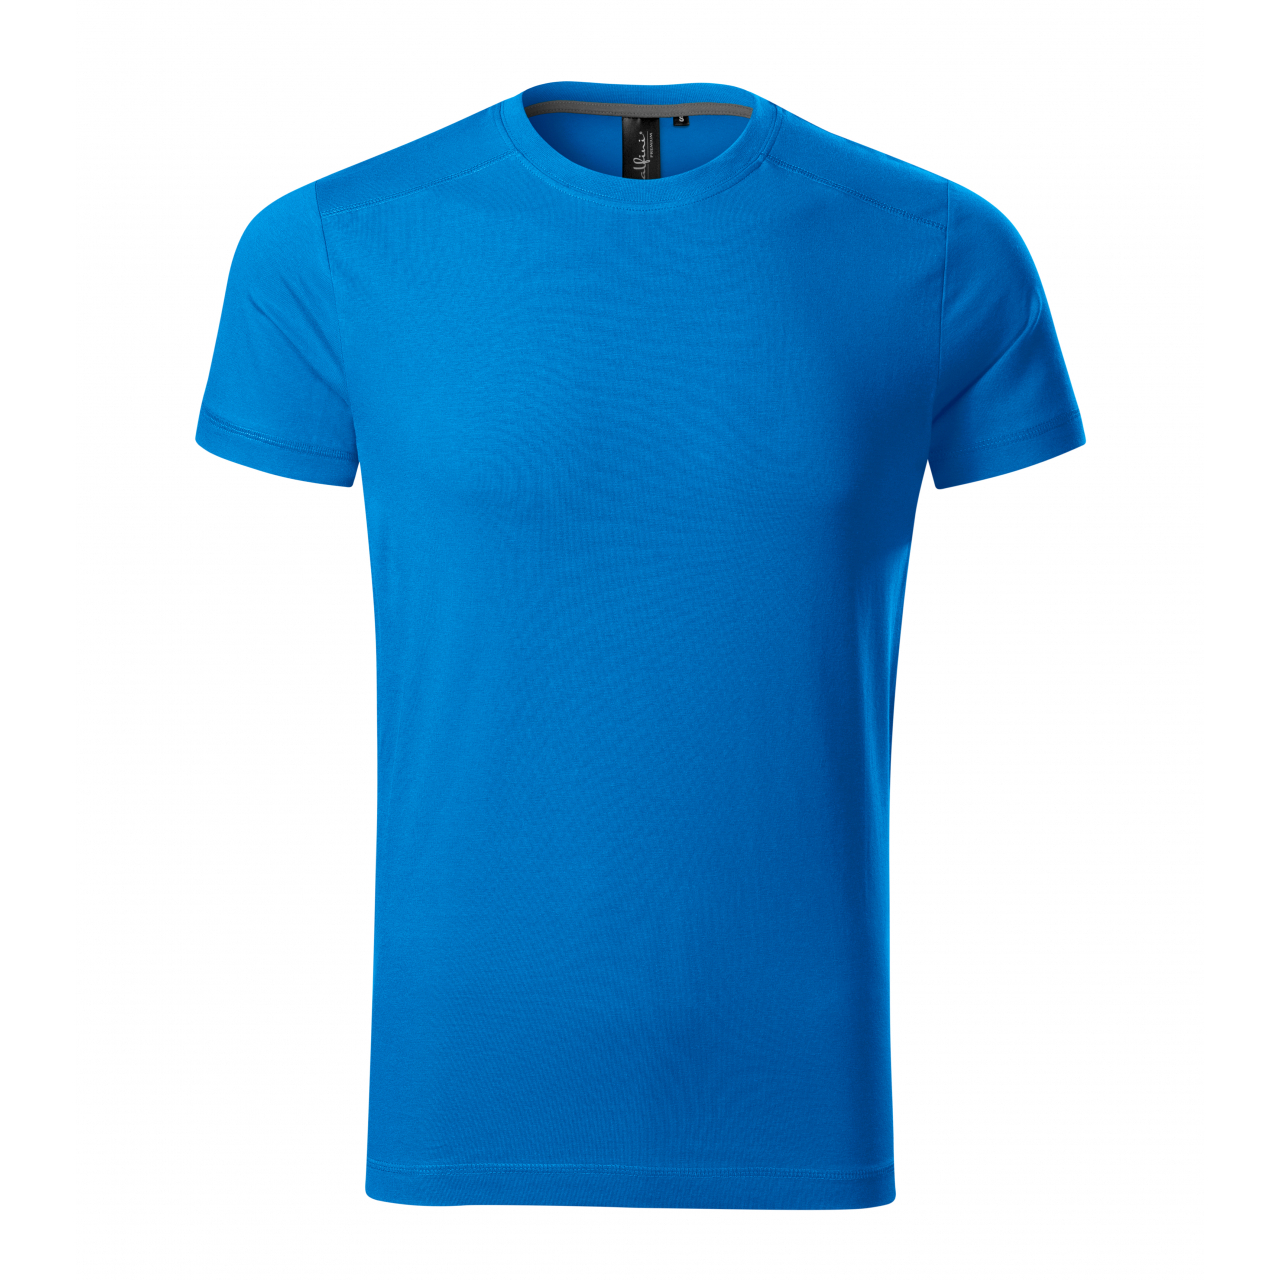 Tričko pánské Malfini Action - modré, XL